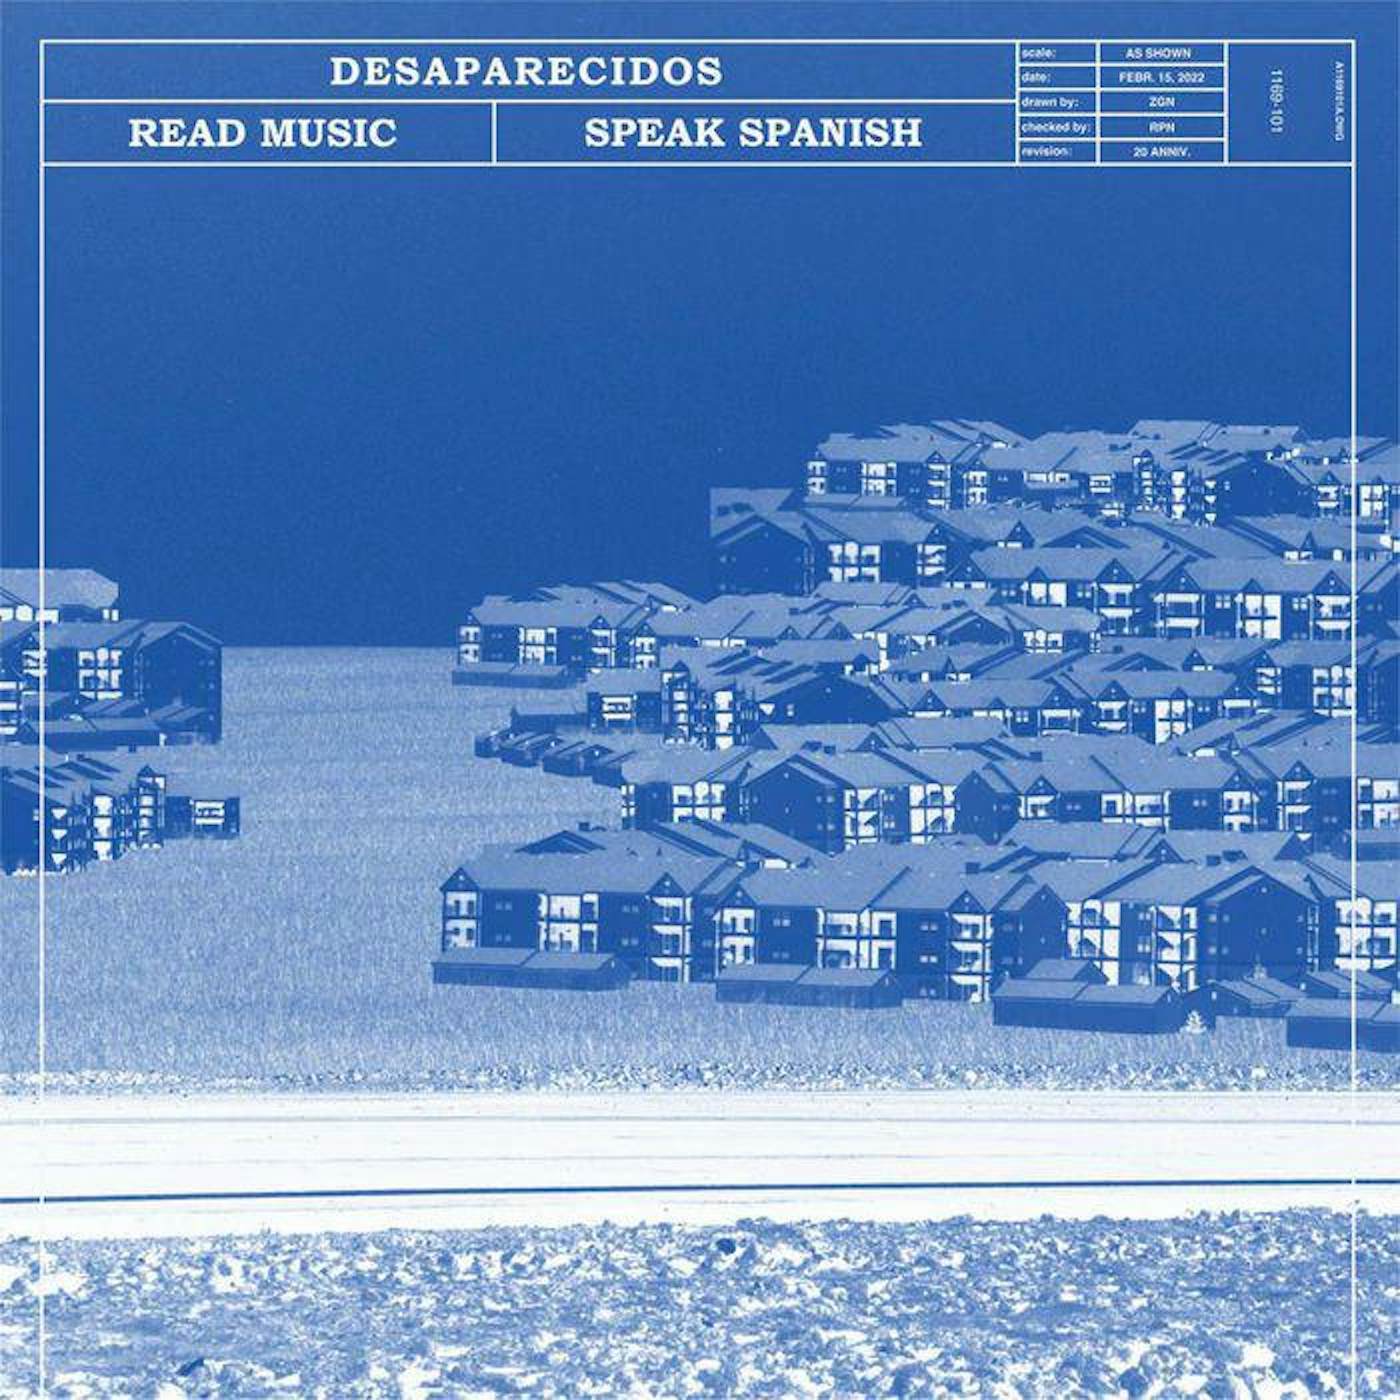 Desaparecidos Read Music / Speak Spanish (Remastered) (transparent blue vinyl/DL card) vinyl record